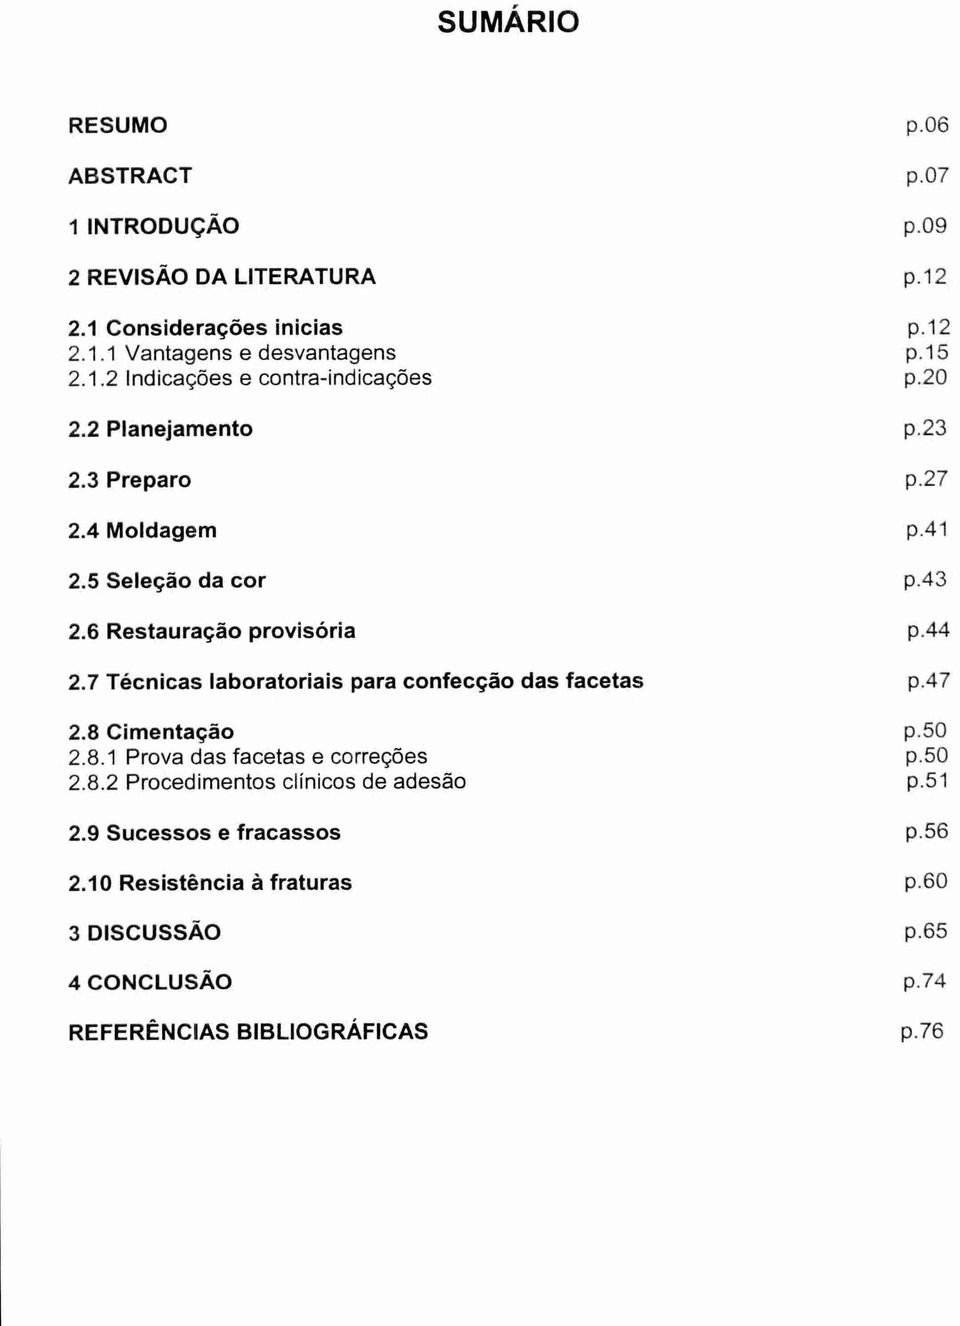 6 Restauração provisória p.44 2.7 Técnicas laboratoriais para confecção das facetas p.47 2.8 Cimentação p.50 2.8.1 Prova das facetas e correções p.